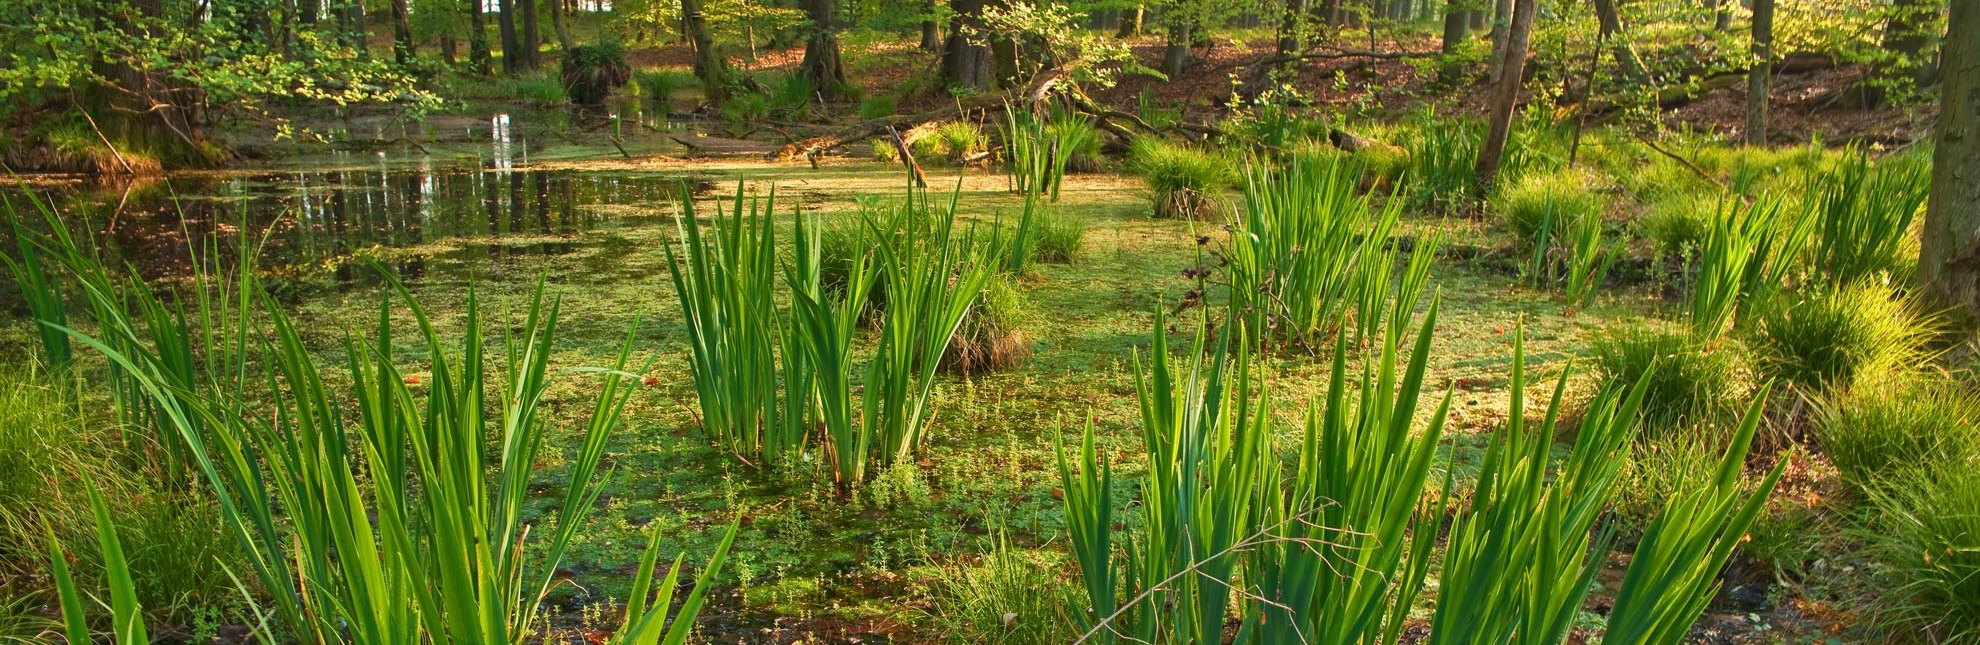 Das Sumpfgebiet Kamerun in der Nähe von Mölln, © Thomas Ebelt / HLMS GmbH